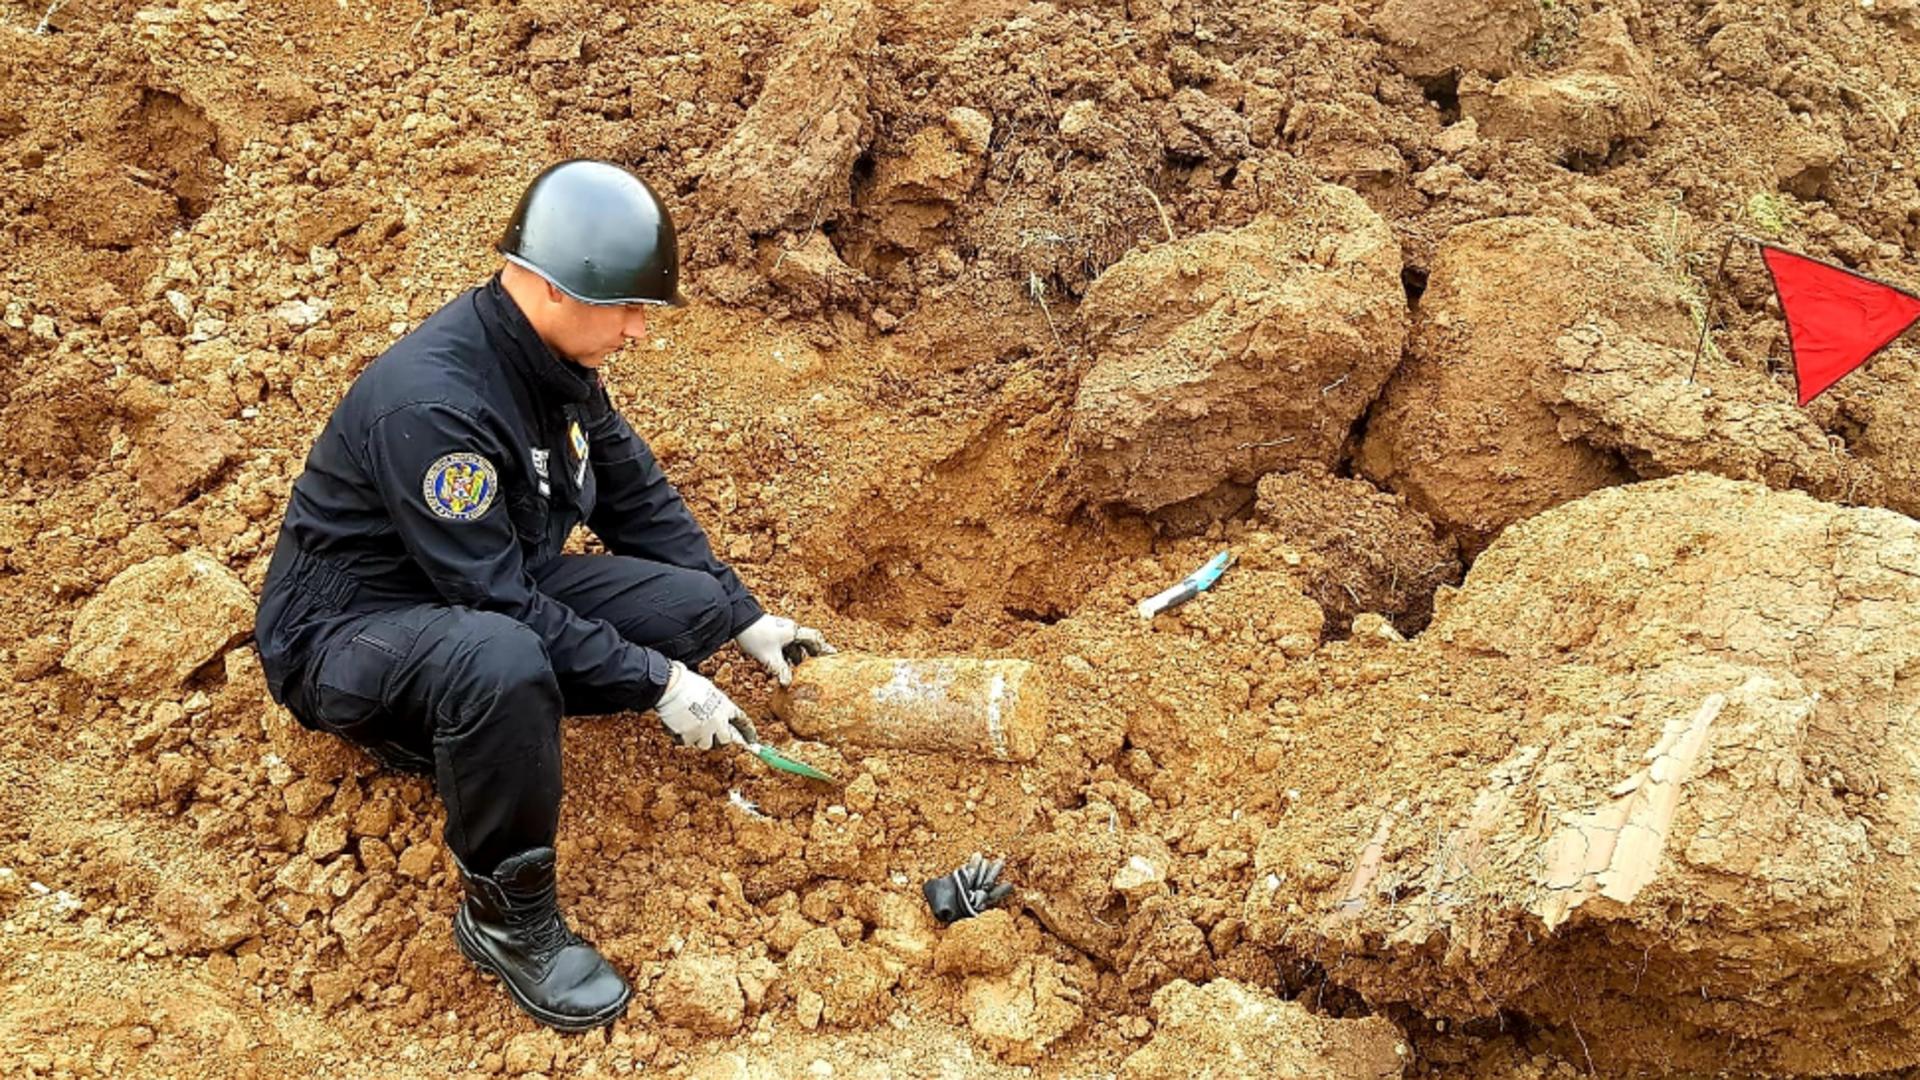 Proiectil exploziv de 152 mm, găsit pe un islaz din Giurgiu. Foto/ISU Giurgiu